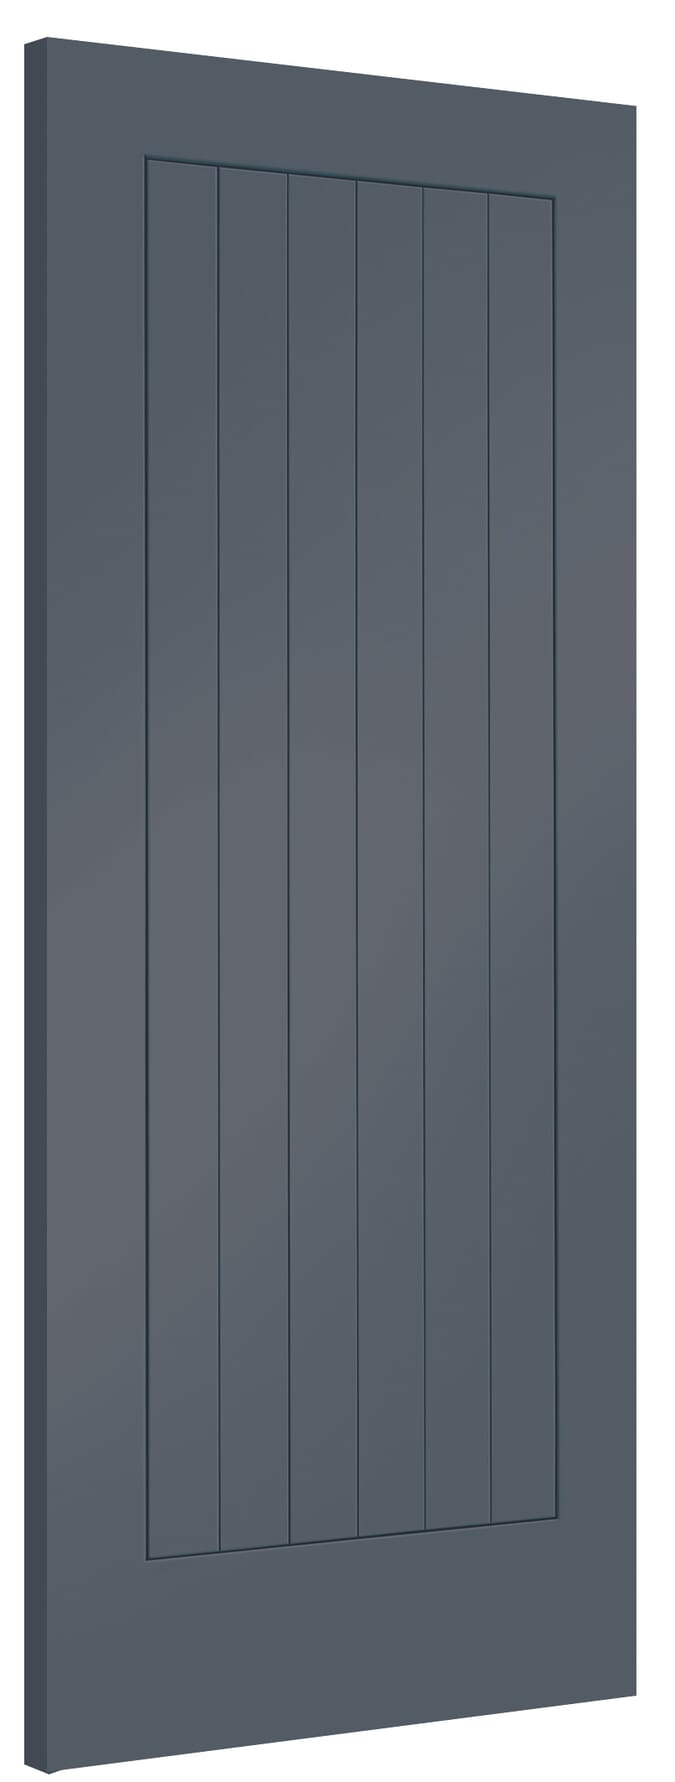 762x1981x44mm (30") Suffolk Cinder Grey Internal Doors